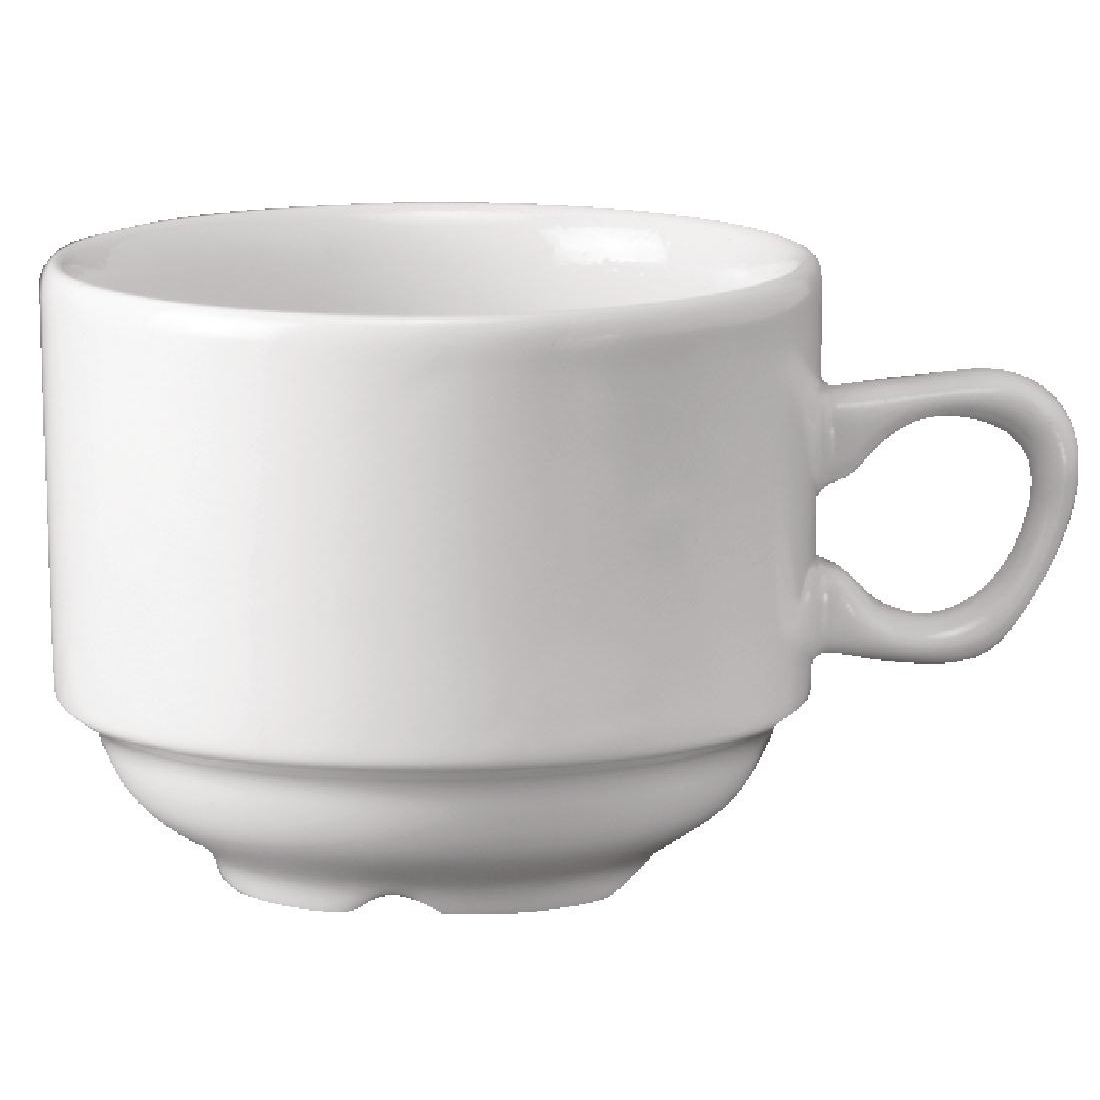 Churchill Plain Whiteware Stacking Nova Tea Cups 212ml